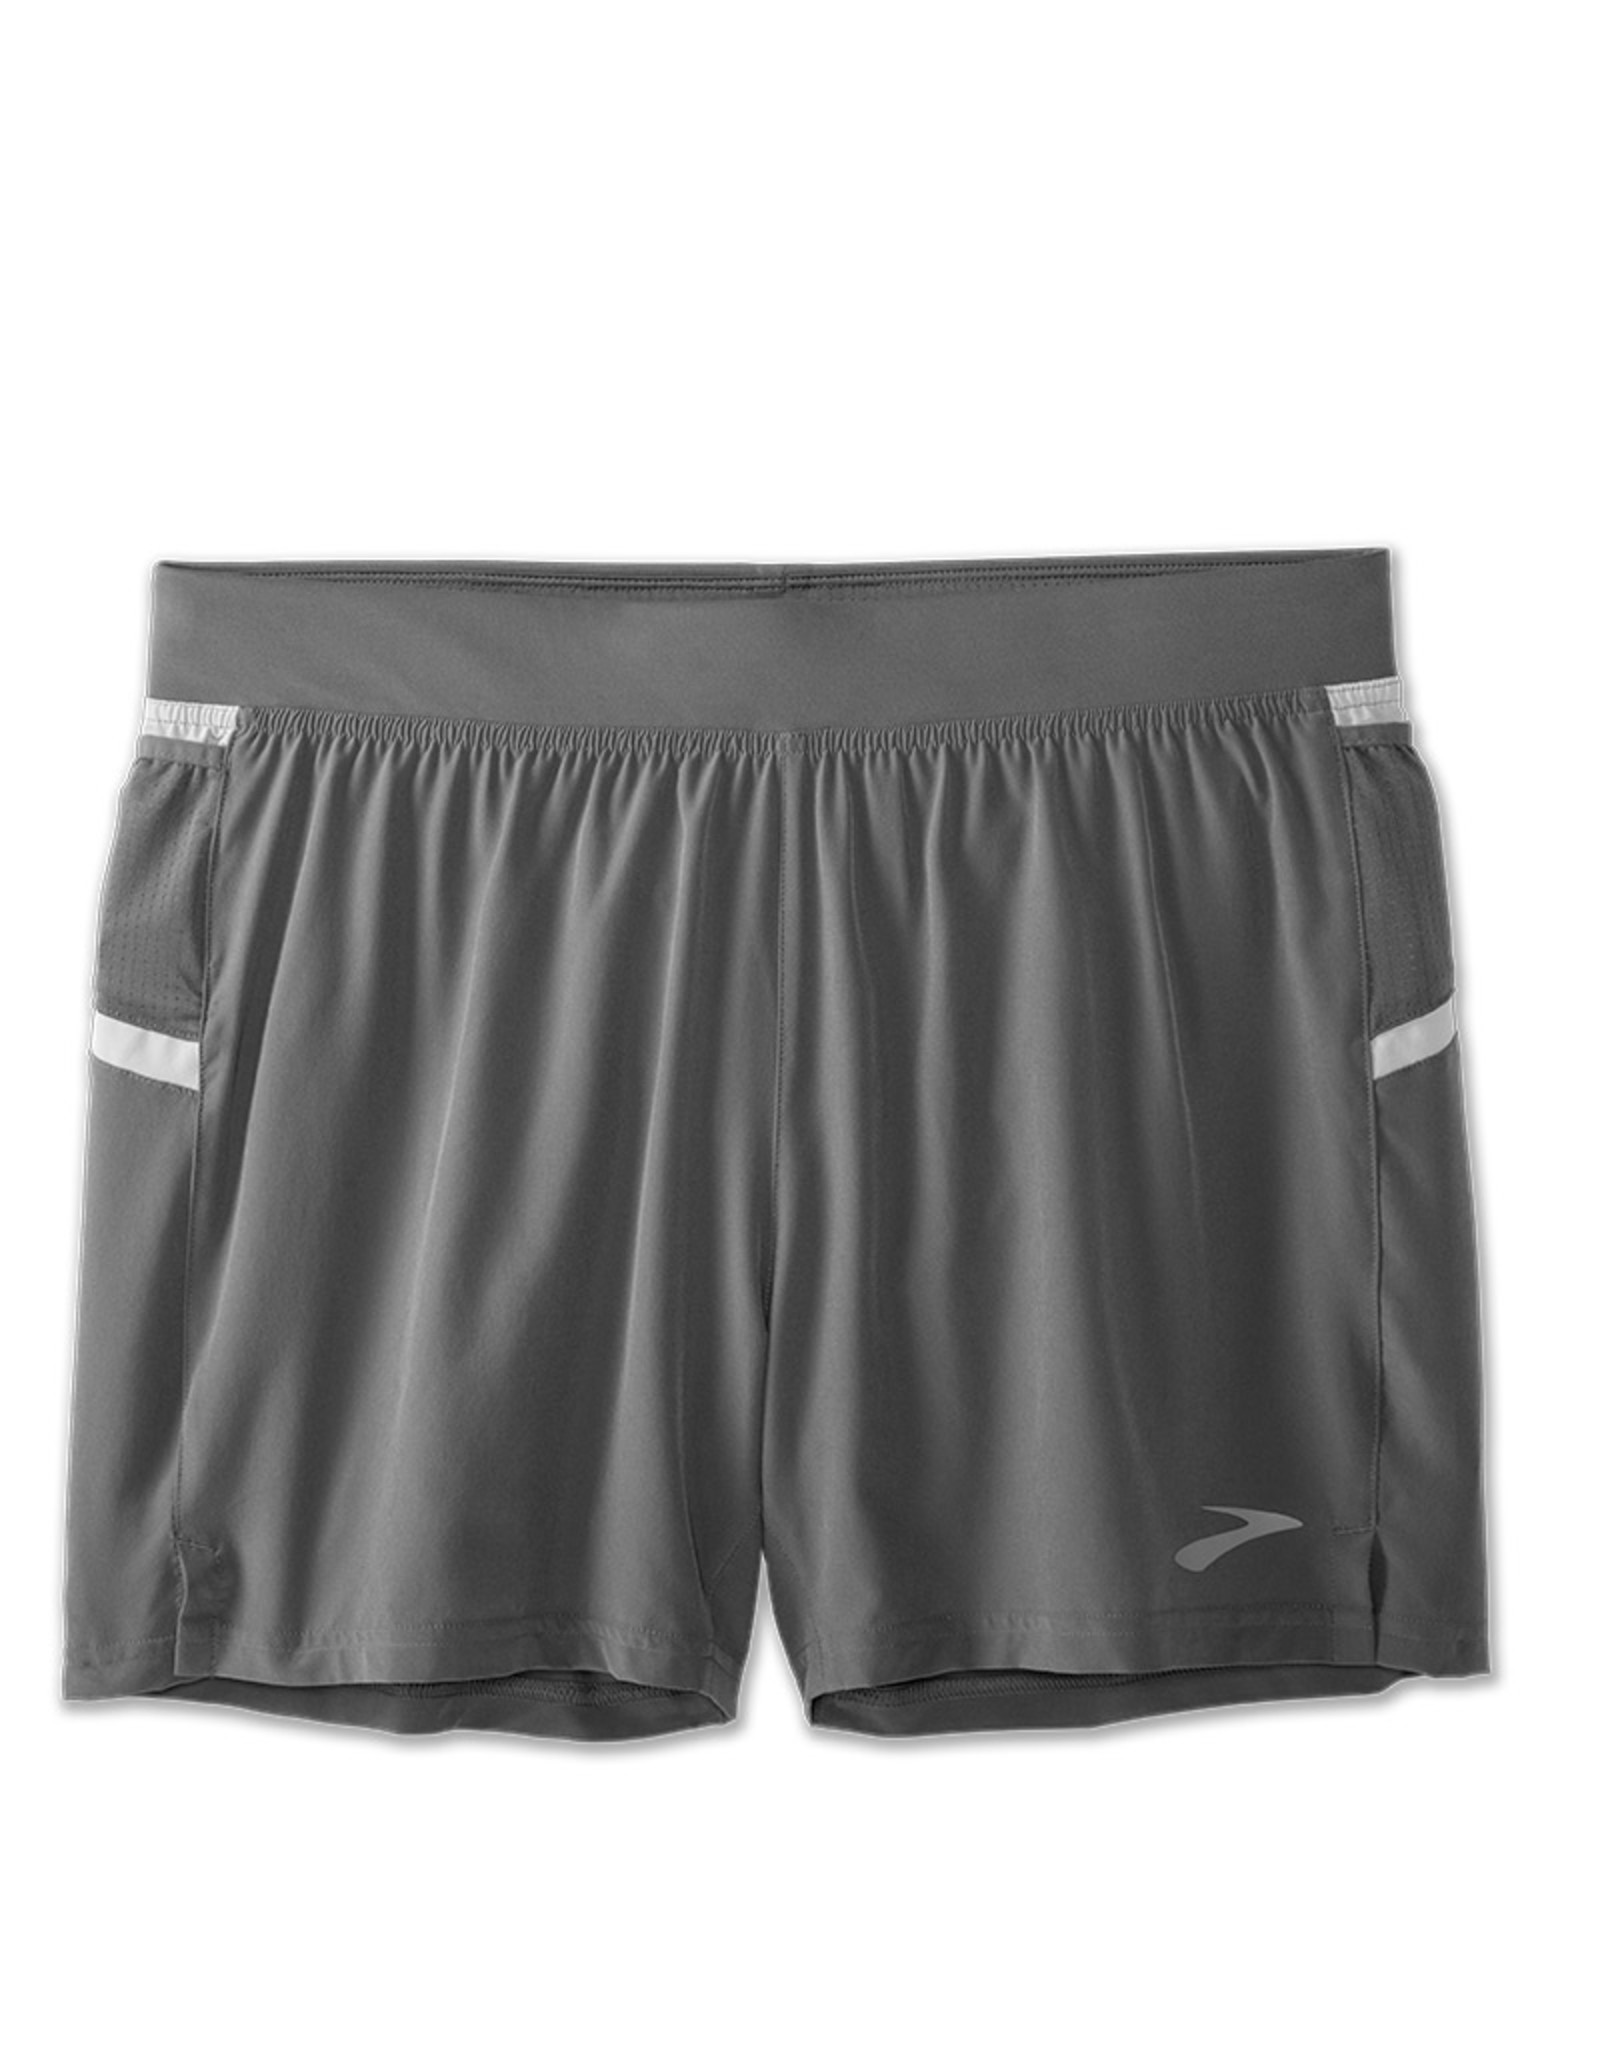 brooks sherpa 5 shorts